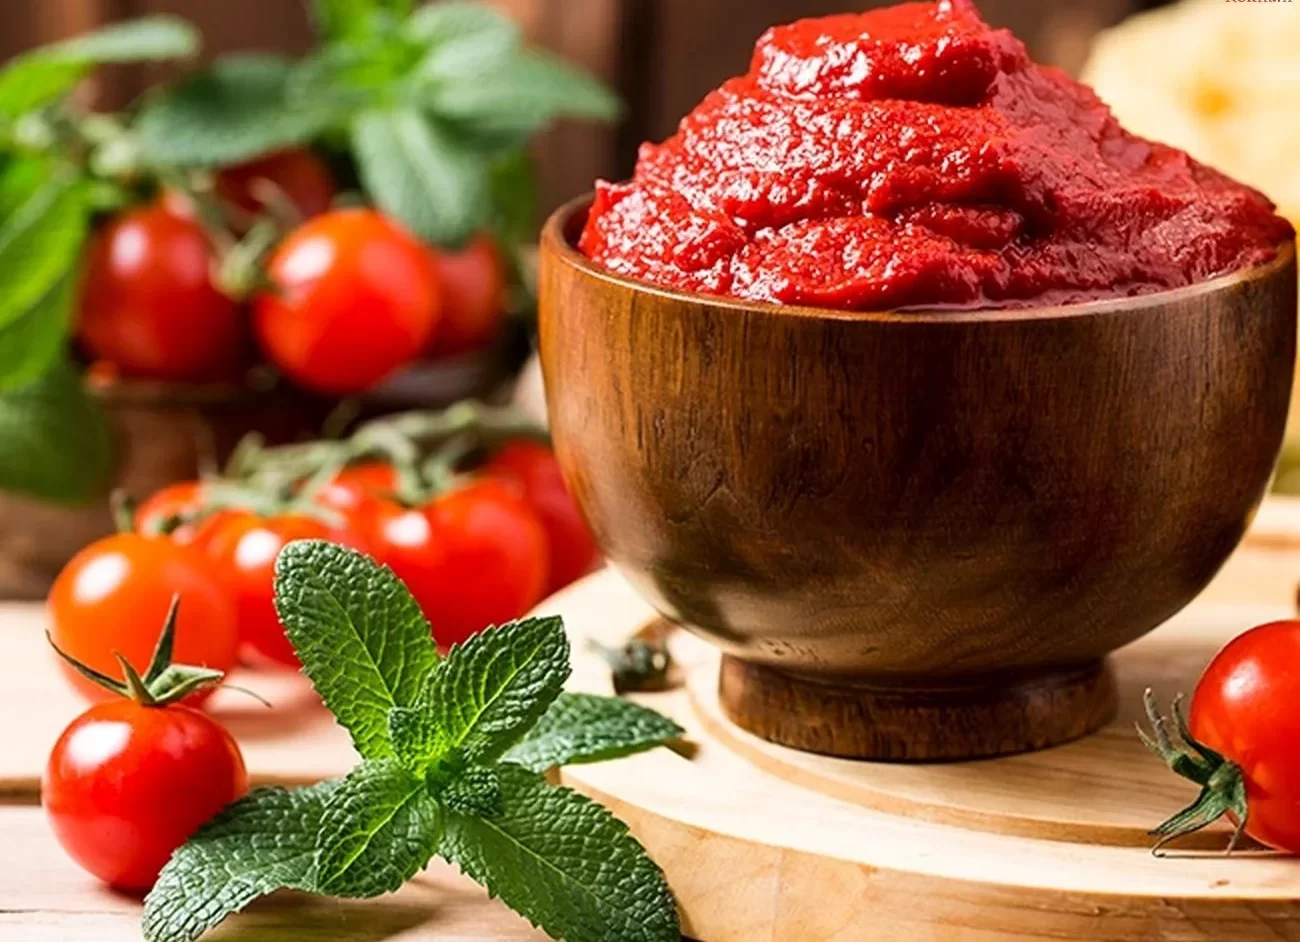 را های جلوگیری از کپک رب گوجه